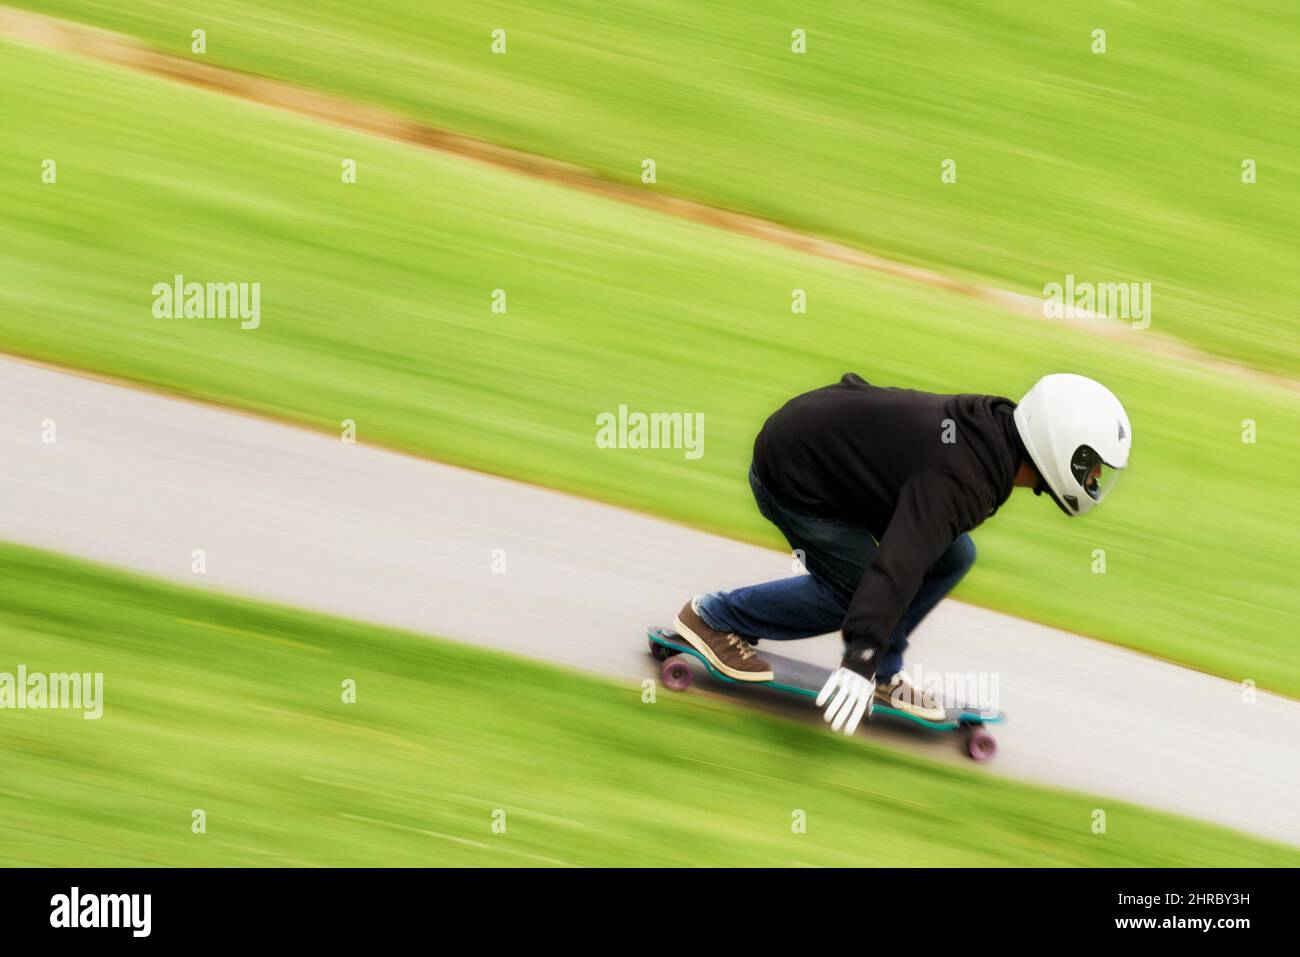 Il vit la vie dans la voie rapide. Photo d'un homme qui fait du skateboard sur une voie à grande vitesse sur son plateau. Banque D'Images